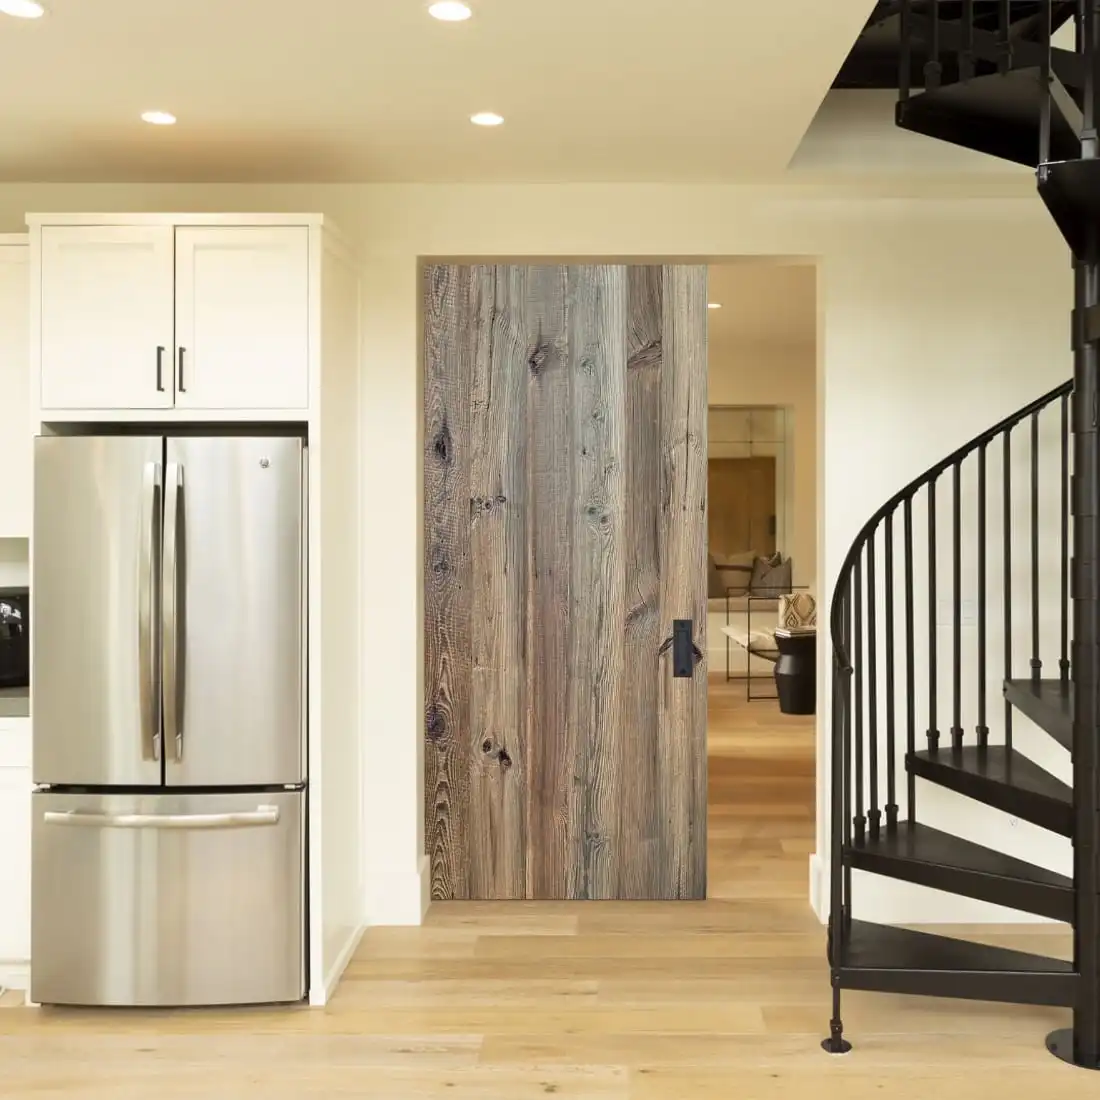  Un intérieur de cuisine moderne avec un réfrigérateur en acier inoxydable à côté d'armoires blanches, une porte de grange coulissante en bois et un escalier en colimaçon noir. 